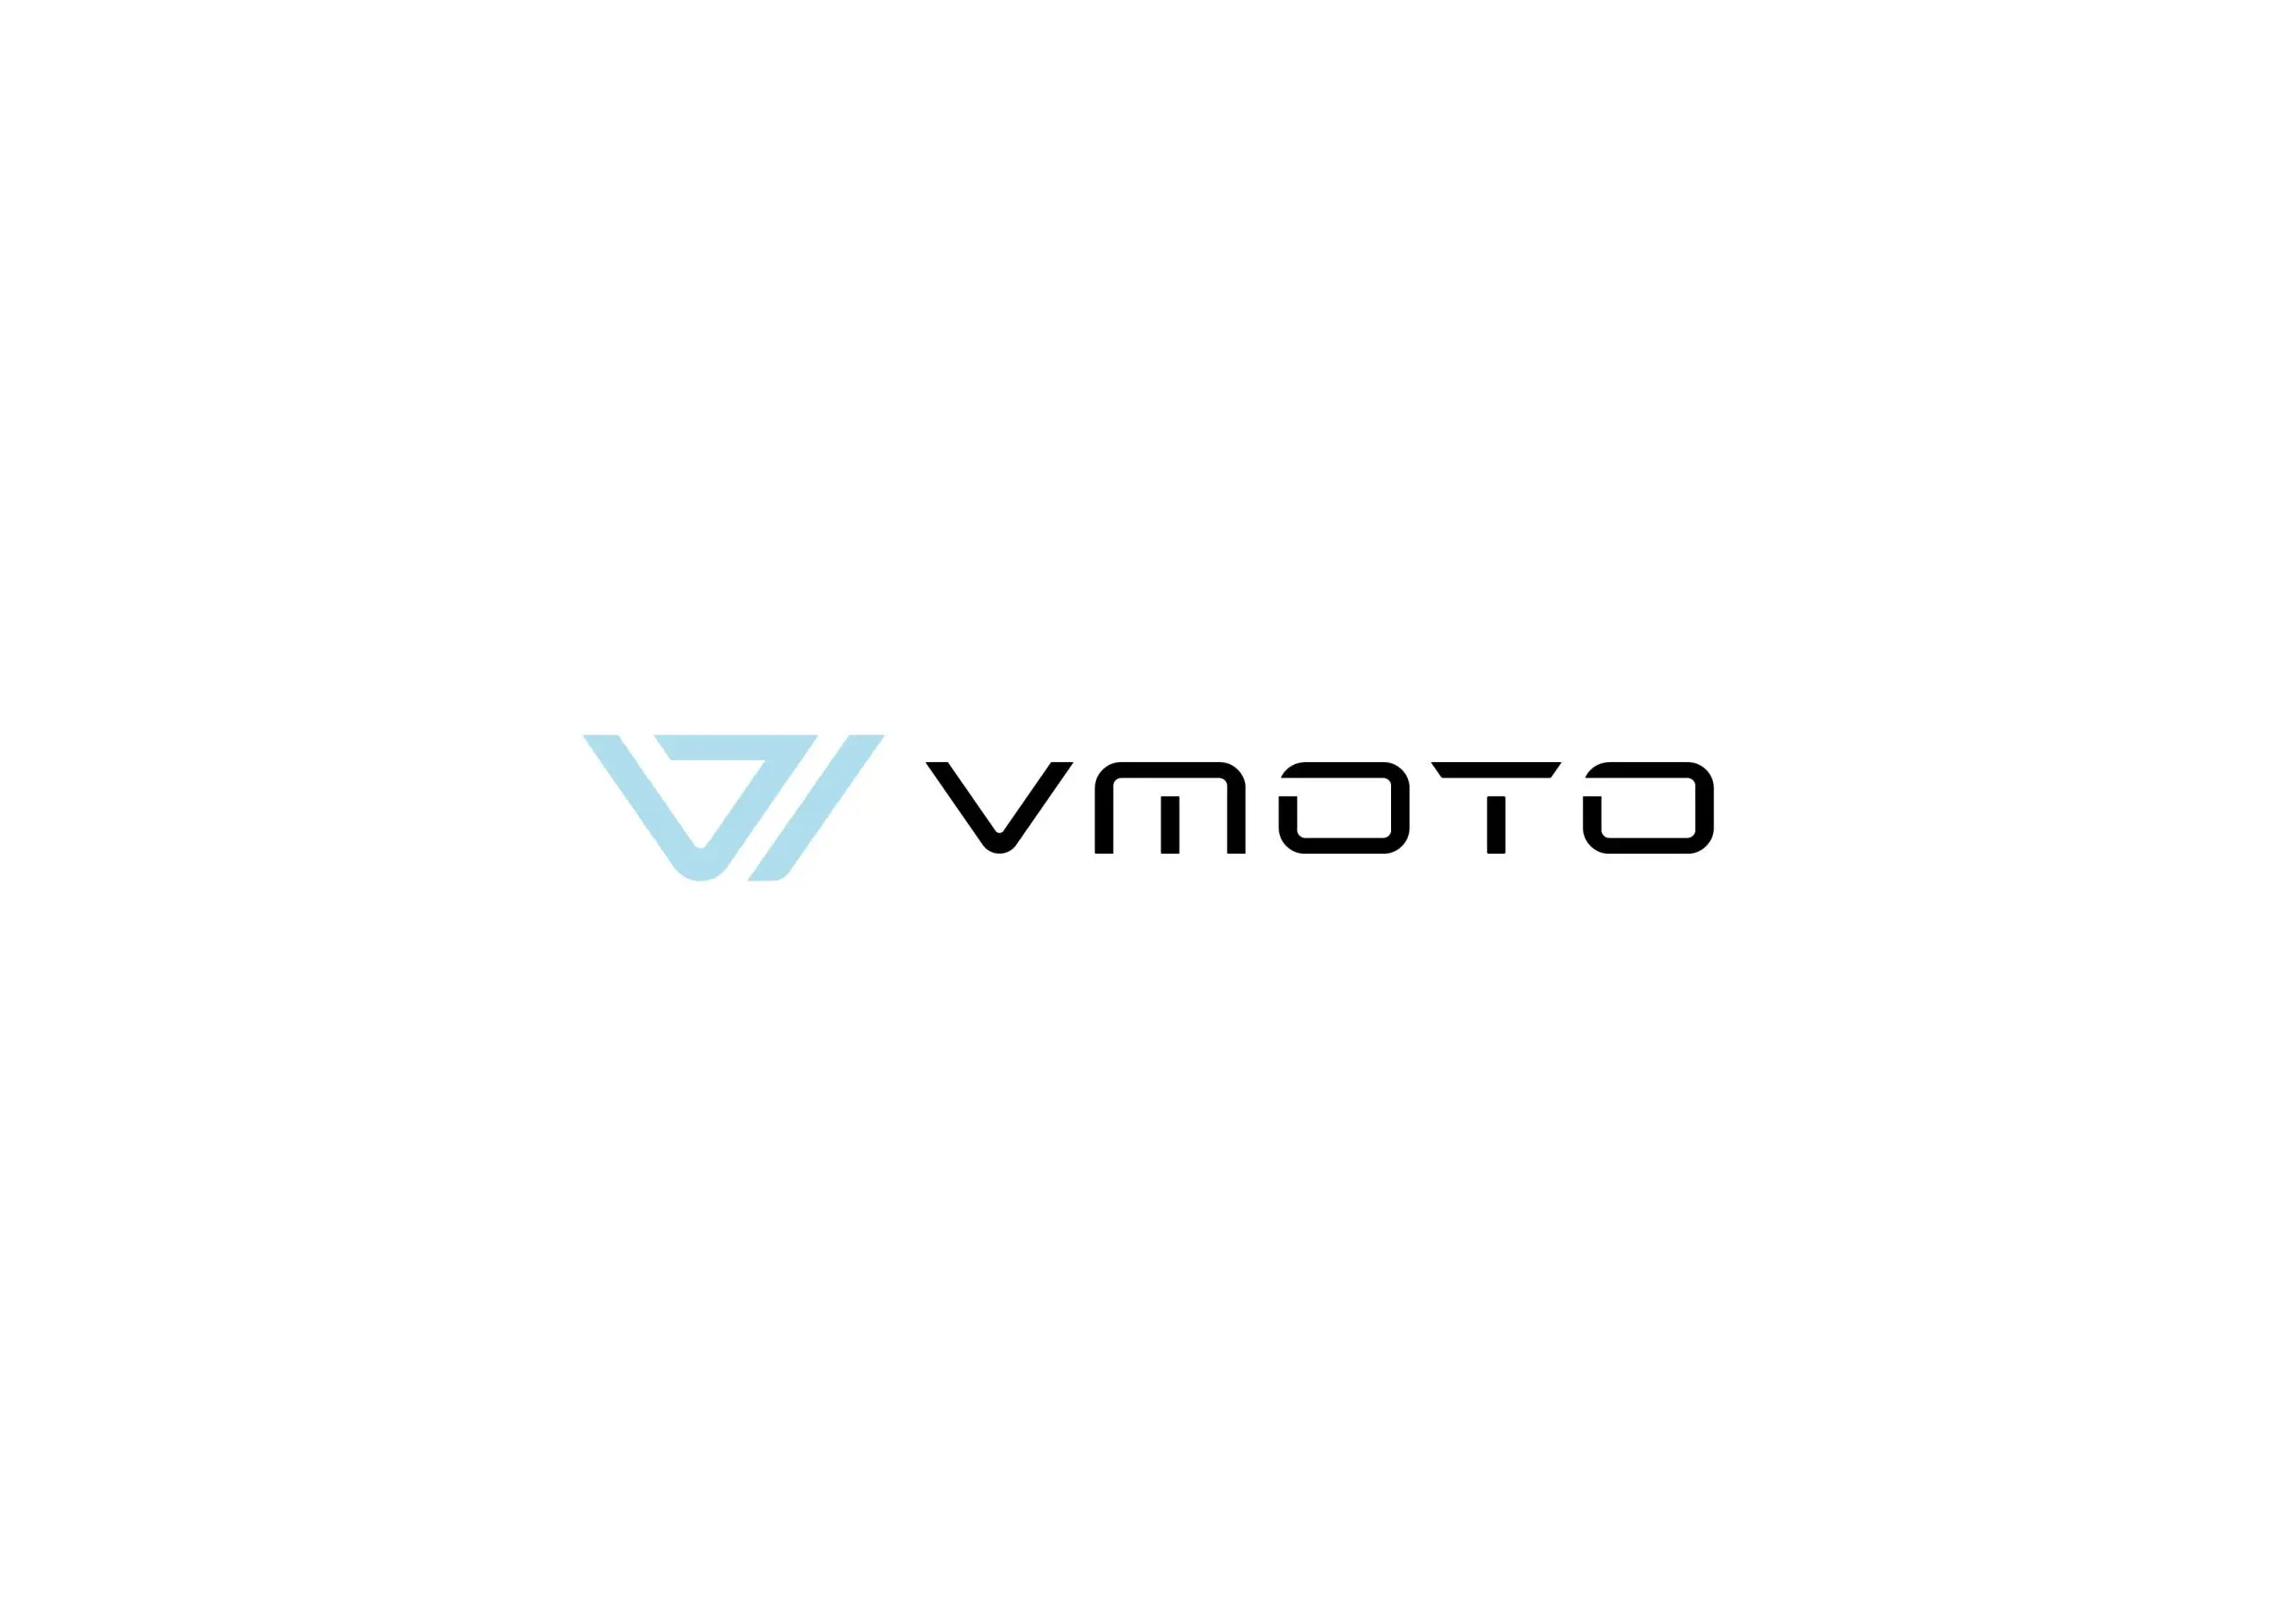 vmoto logo